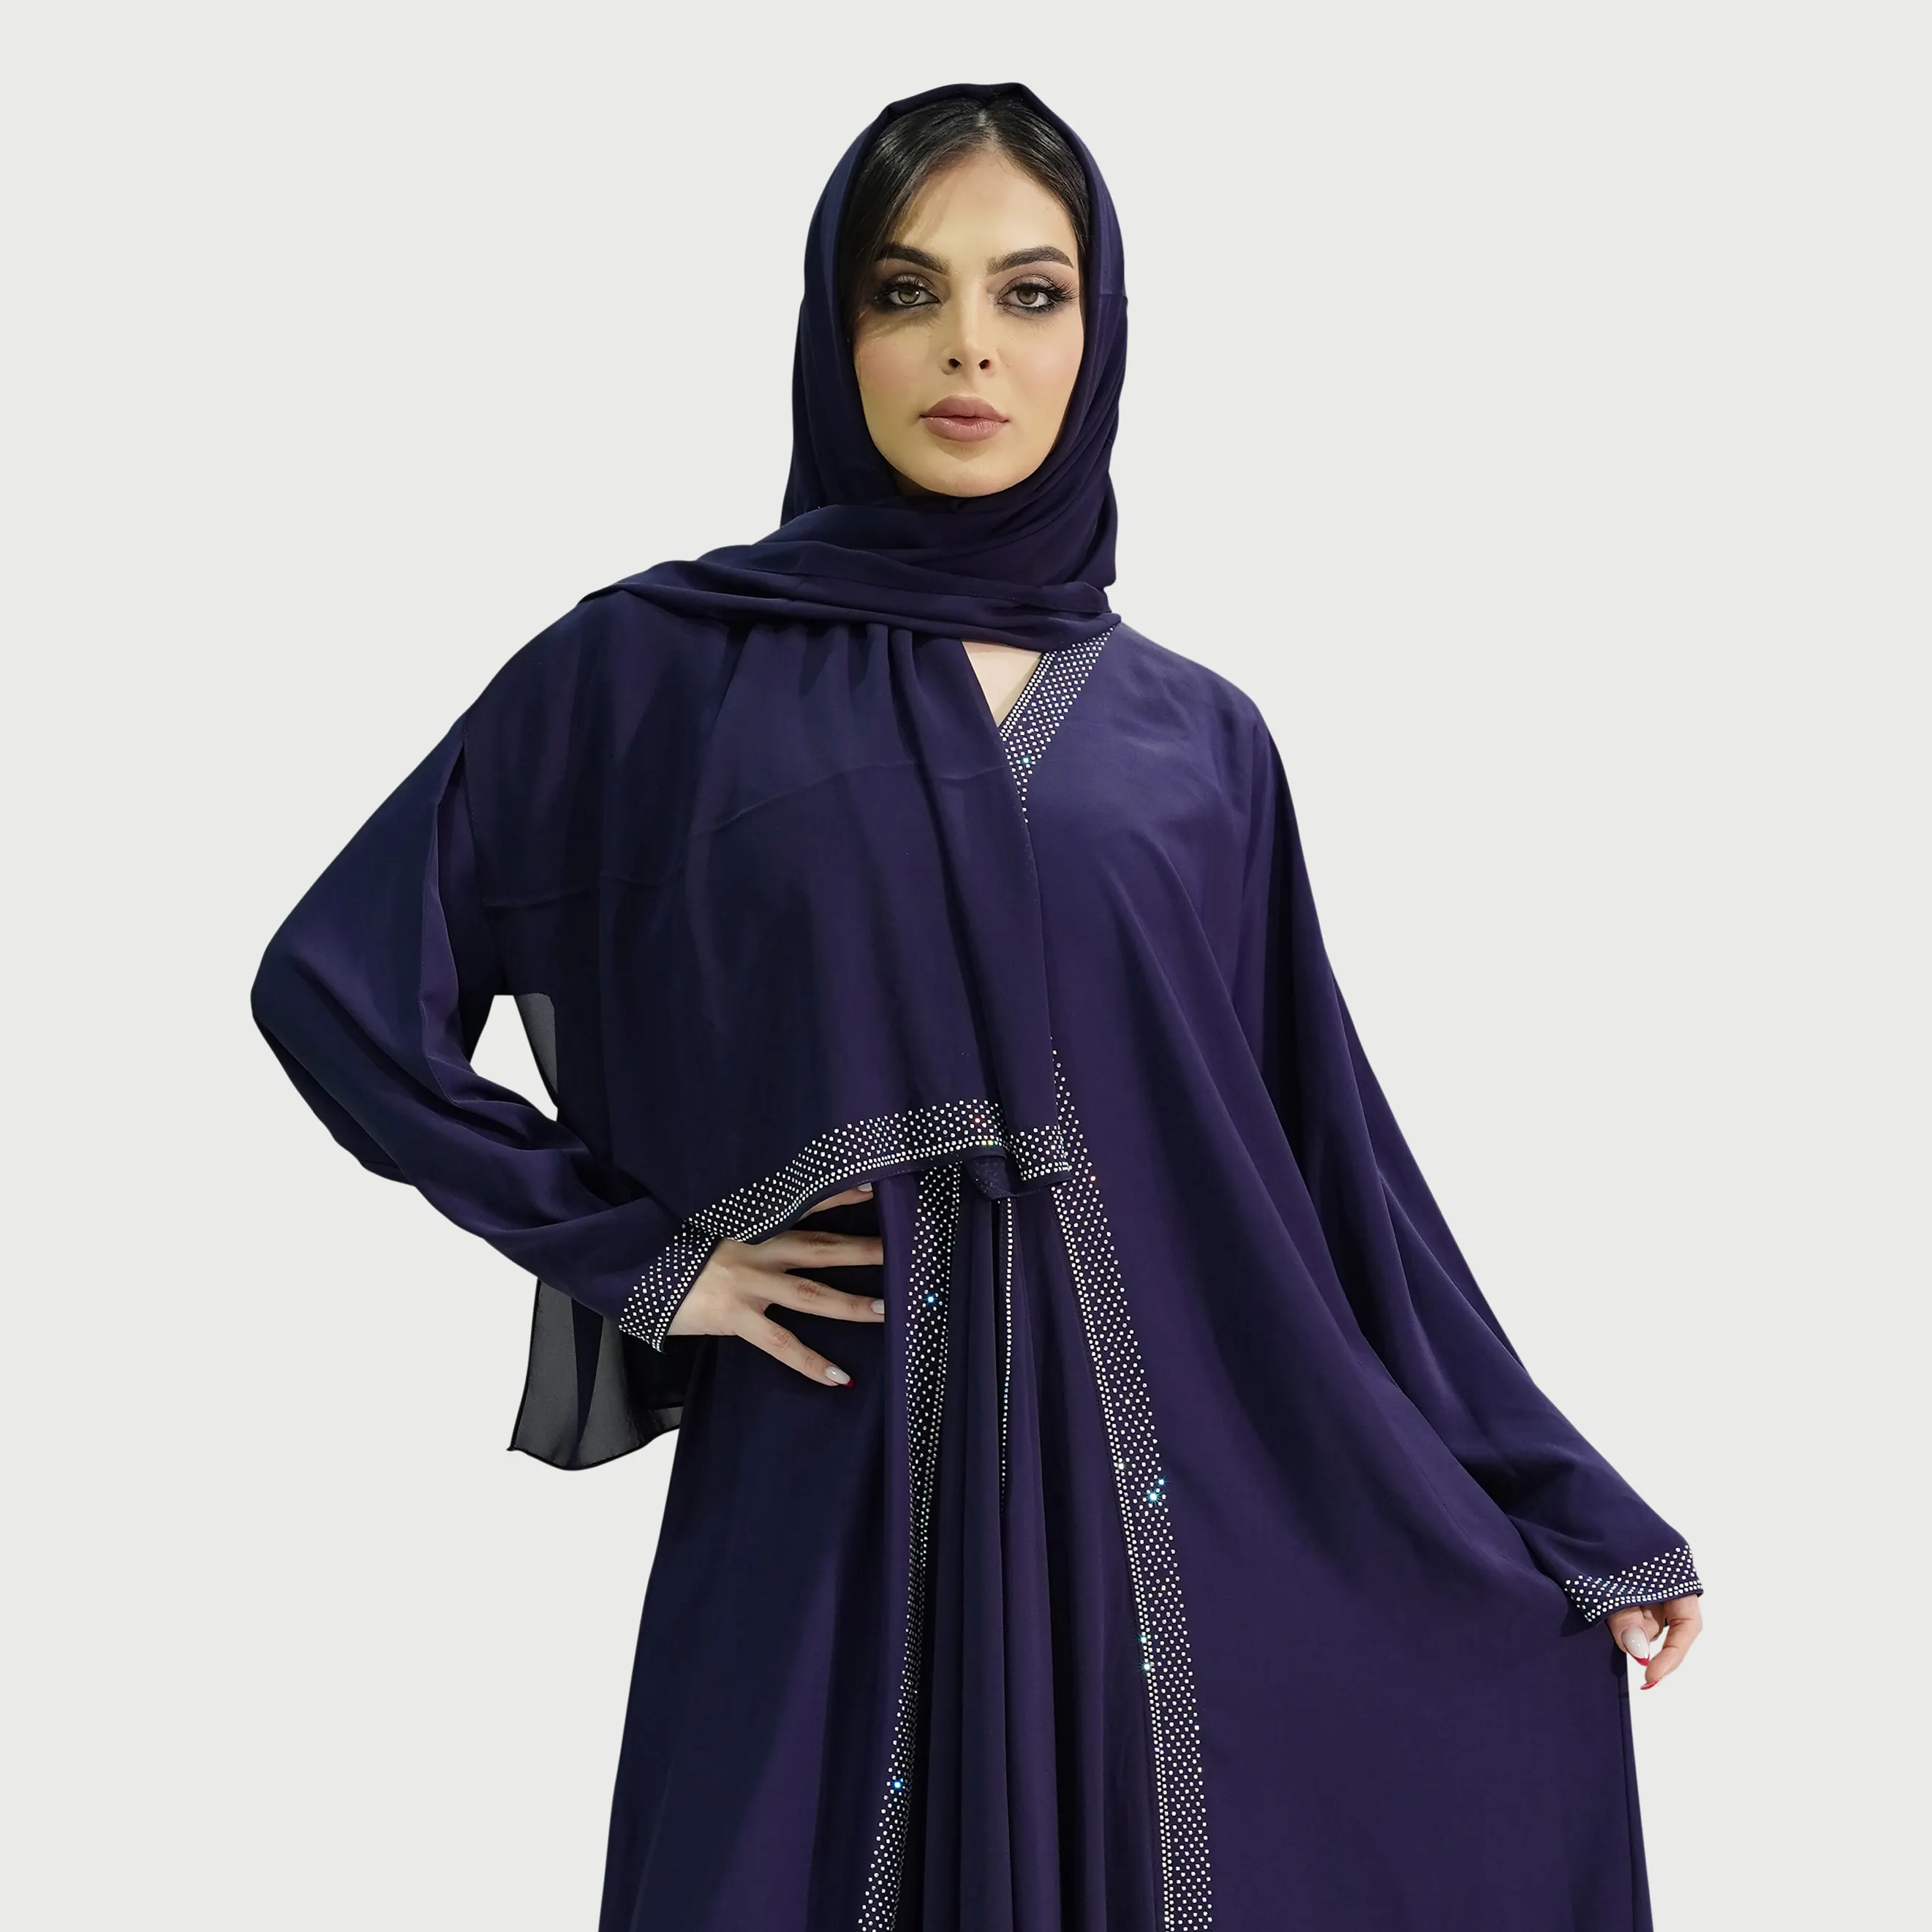 Telas Nida de clase alta, azul marino y granate, ropa de estilo étnico Abaya para mujeres musulmanas, hecha de poliéster, incluye Sheila a juego